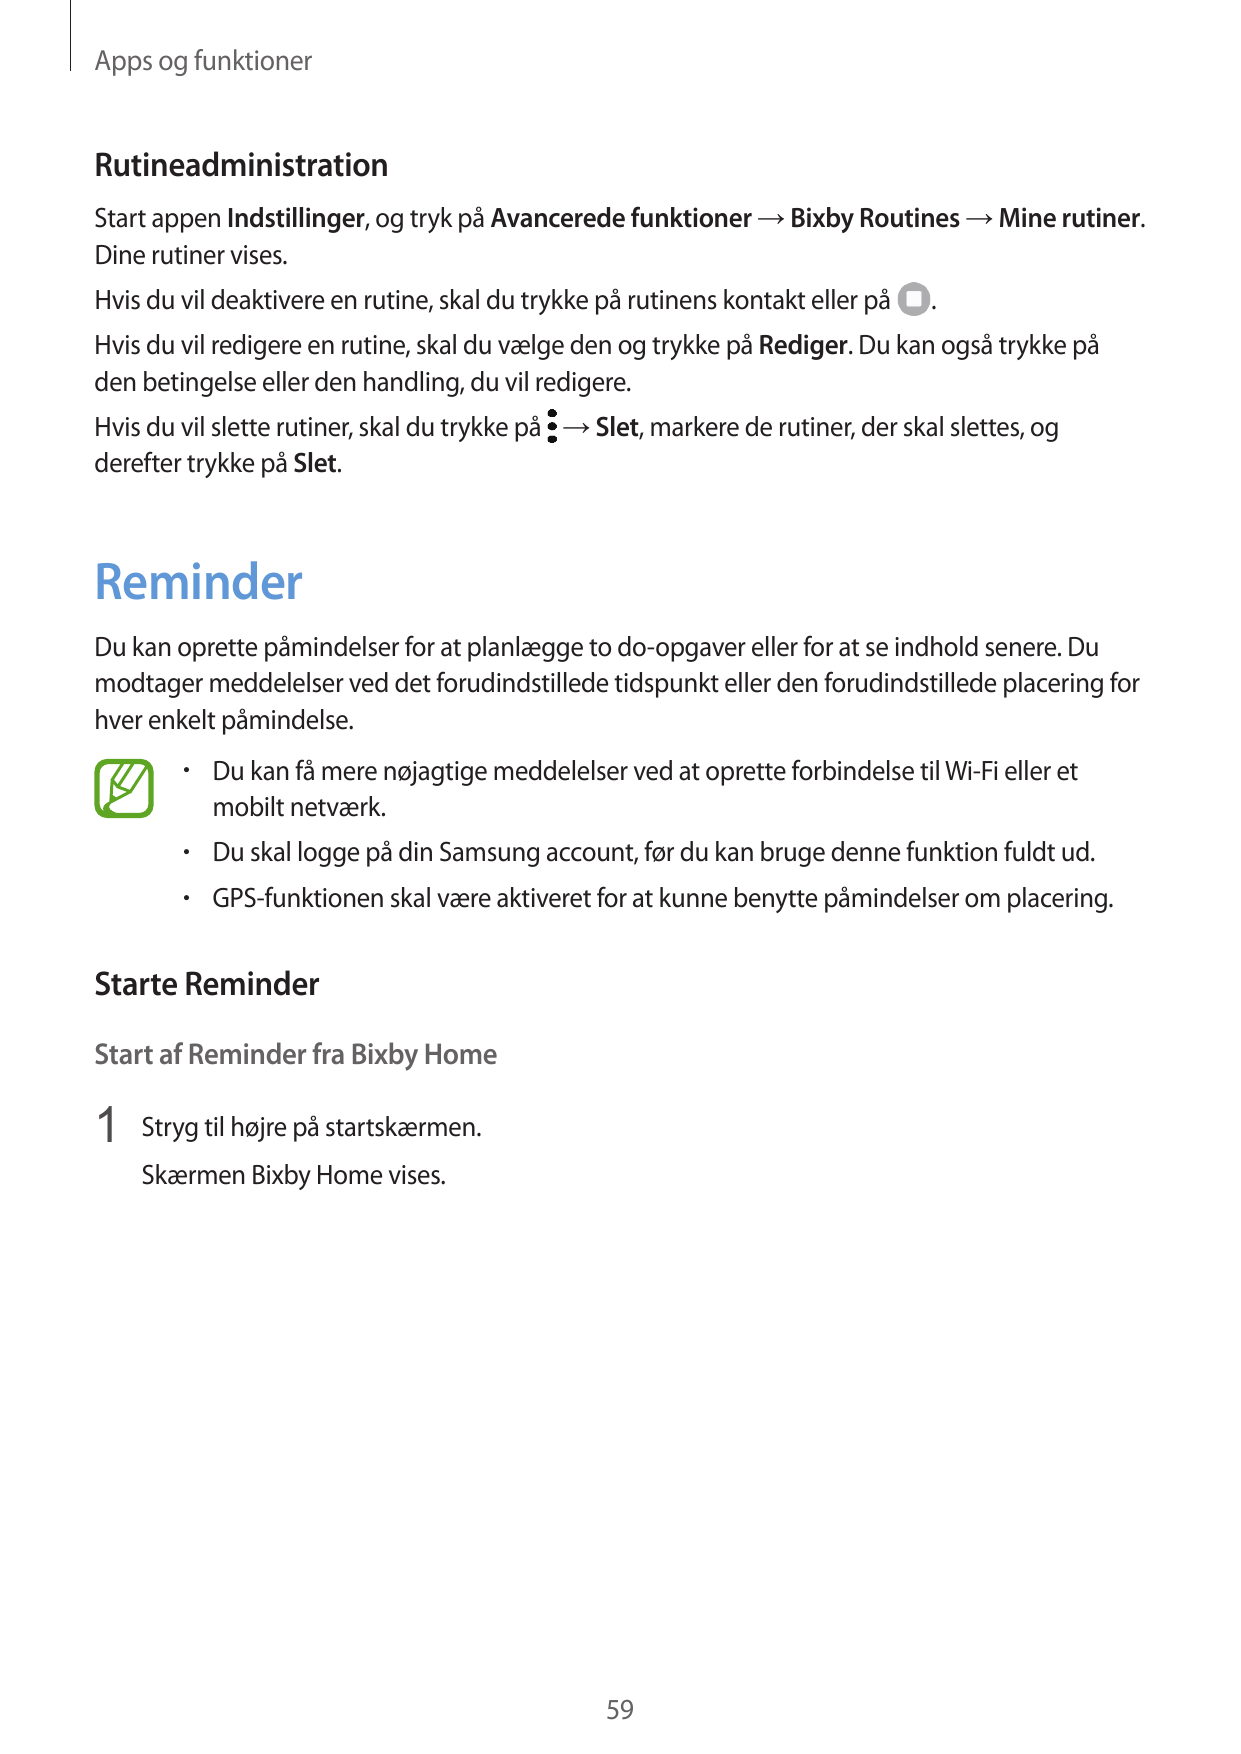 Apps og funktionerRutineadministrationStart appen Indstillinger, og tryk på Avancerede funktioner → Bixby Routines → Mine rutine